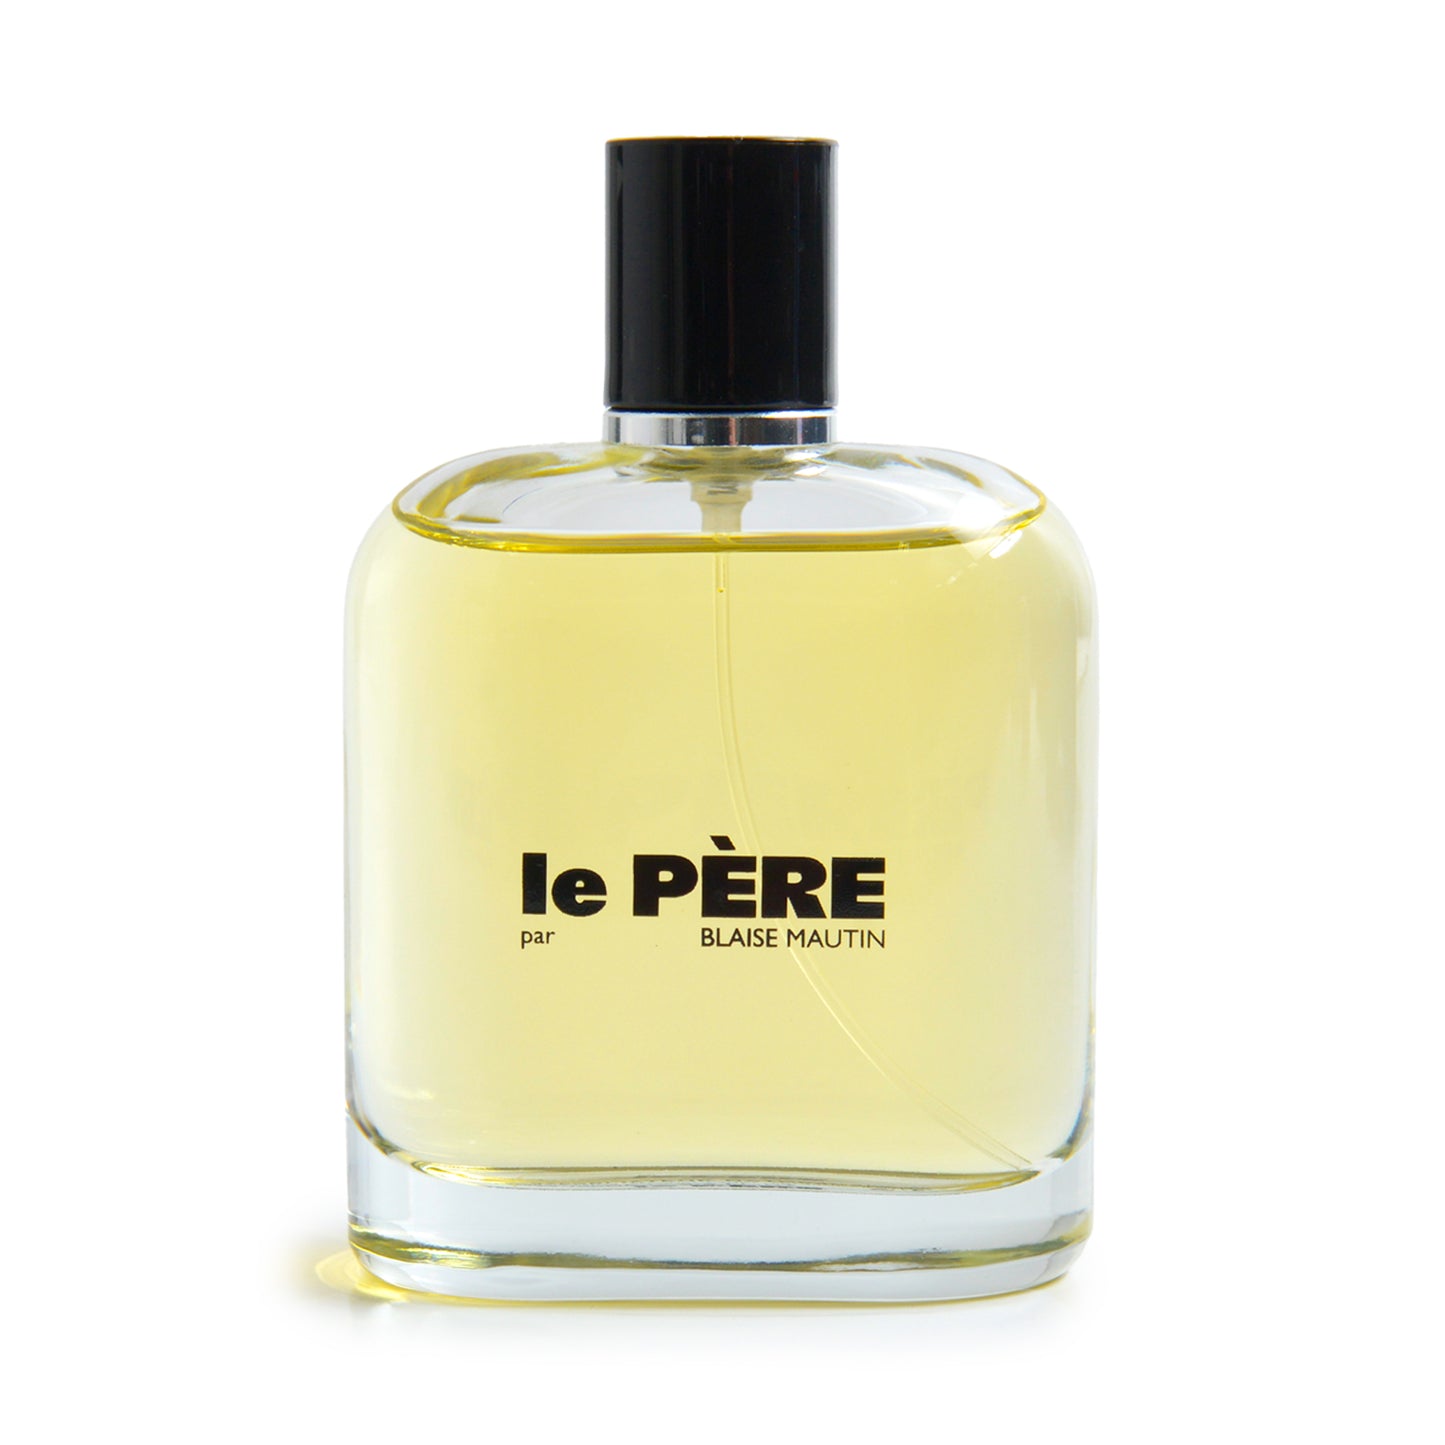 Le PÈRE by Blaise Mautin Fragrance